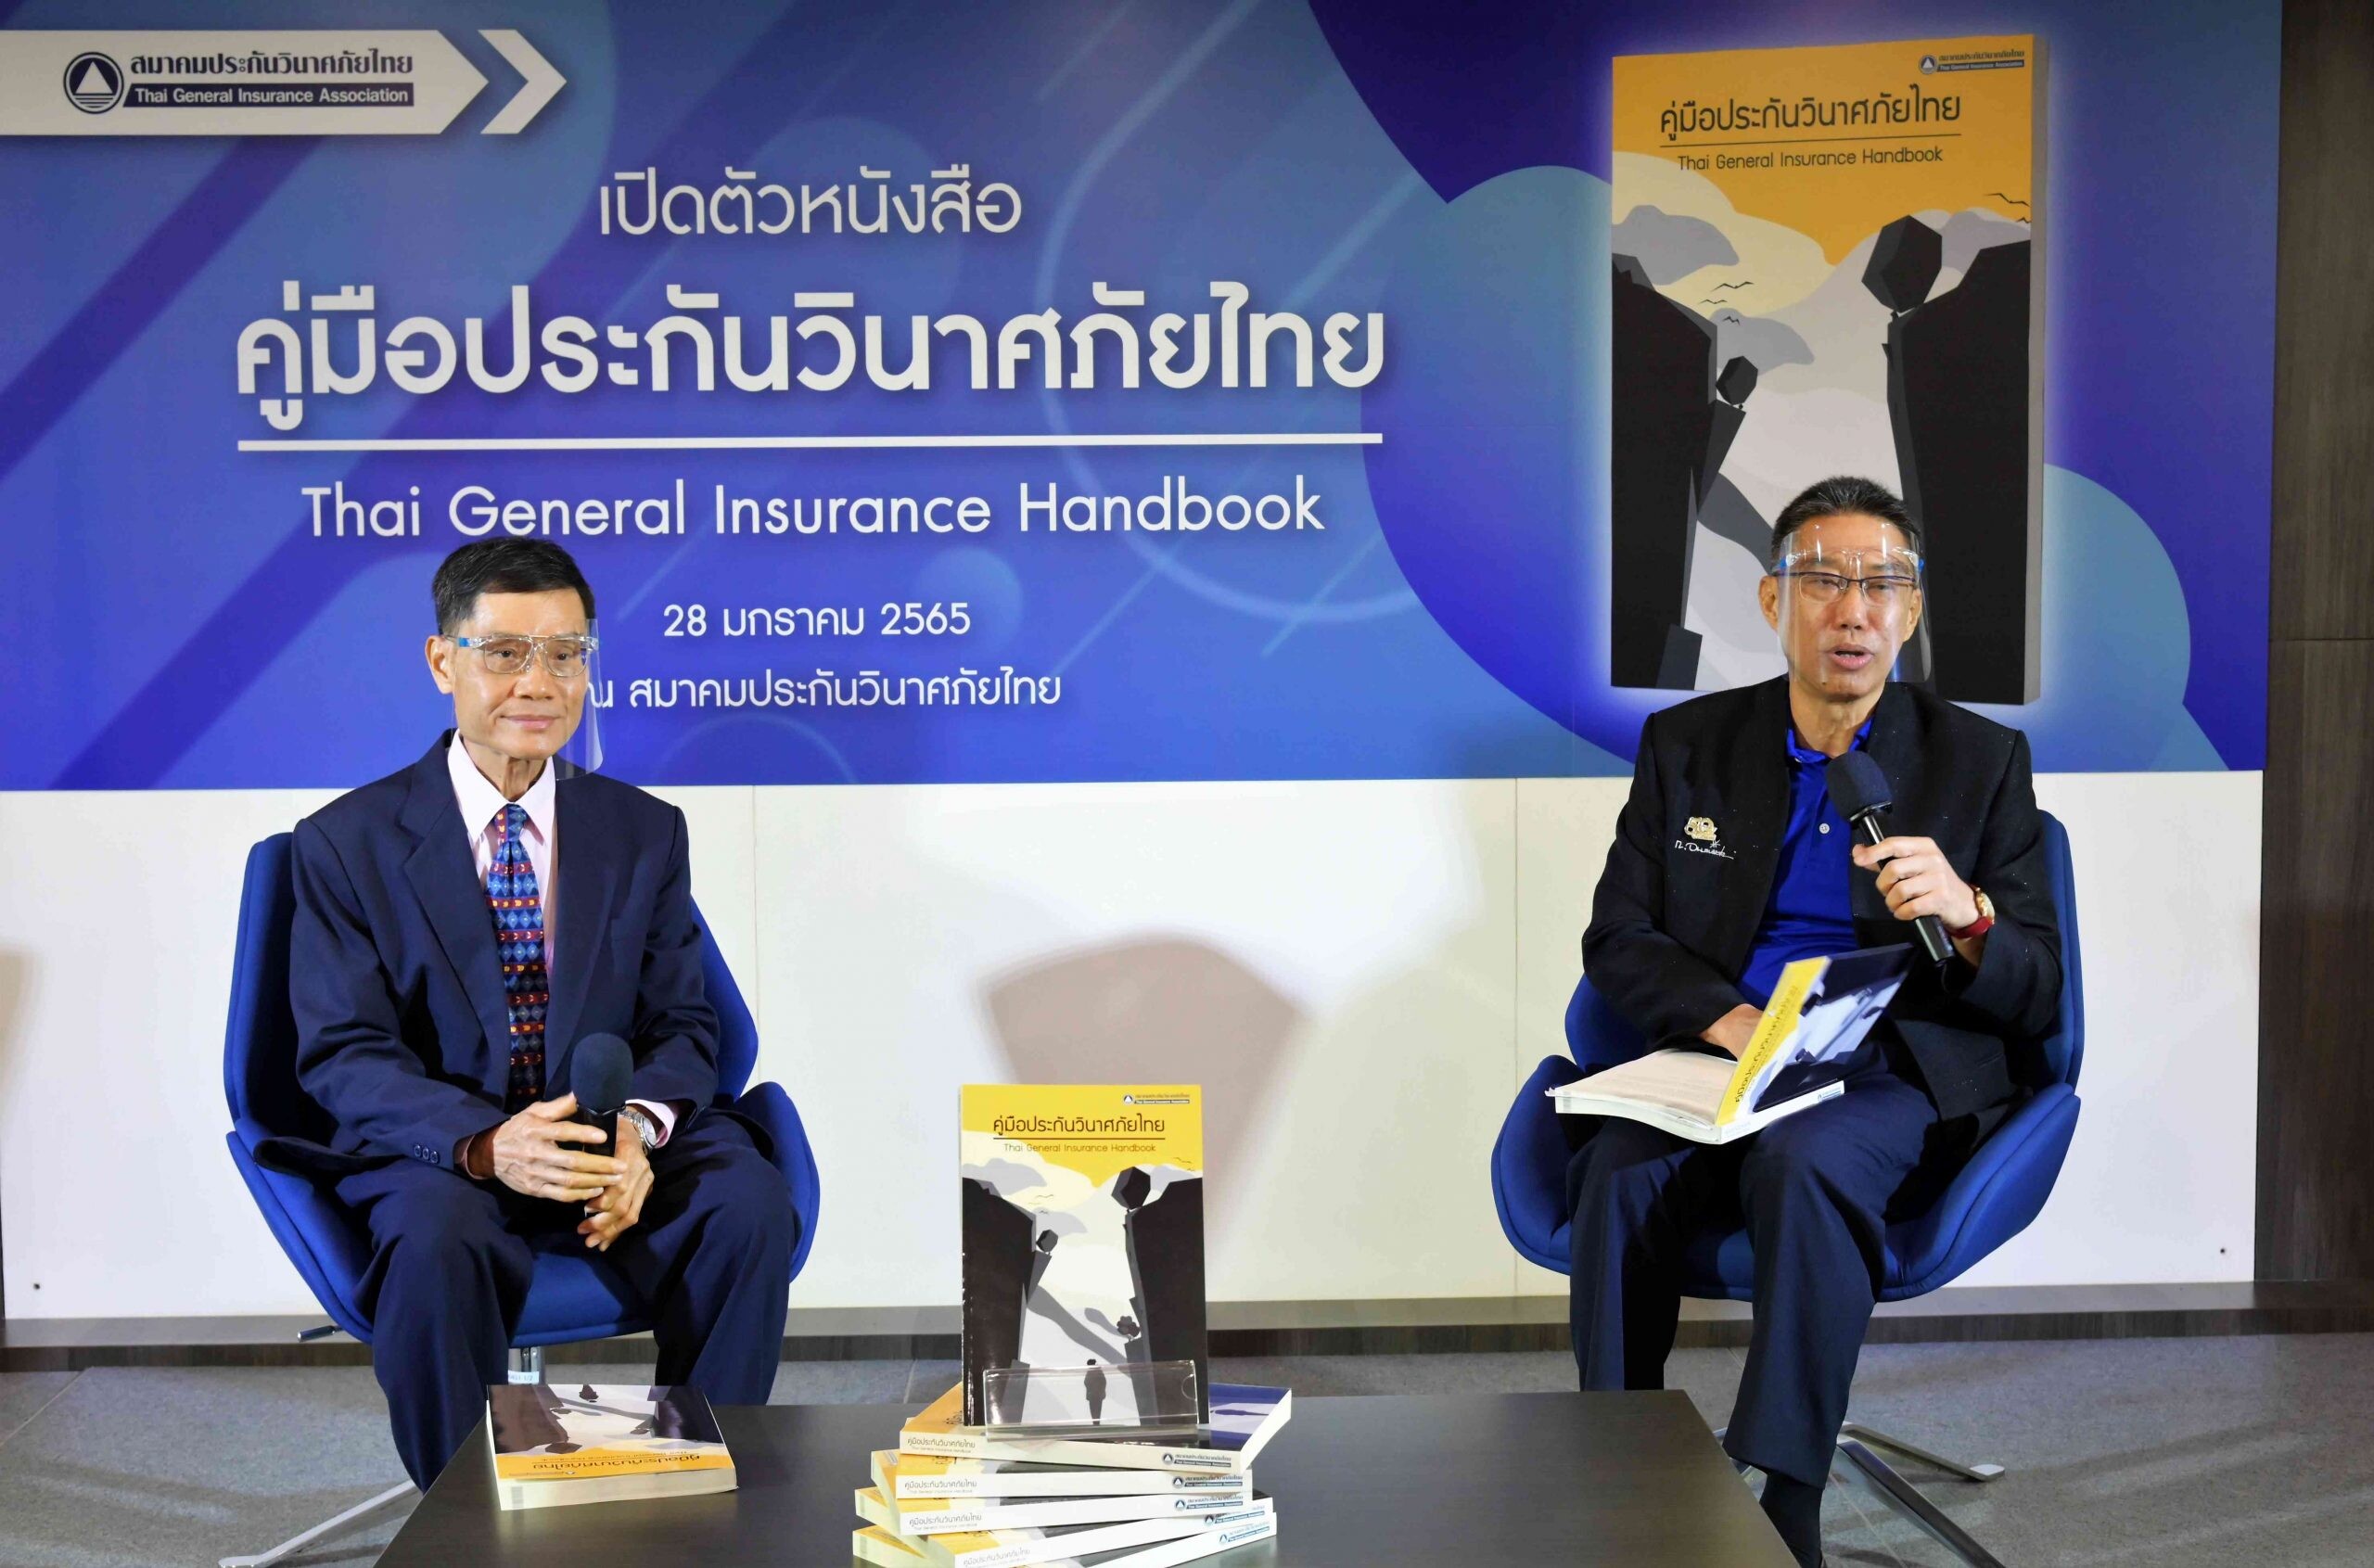 สมาคมประกันวินาศภัยไทย เปิดตัว "คู่มือประกันวินาศภัยไทย" เล่มใหม่ล่าสุด อัดแน่นความรู้ด้านการประกันวินาศภัยที่มีเนื้อหาสมบูรณ์และทันสมัยที่สุดของไทย